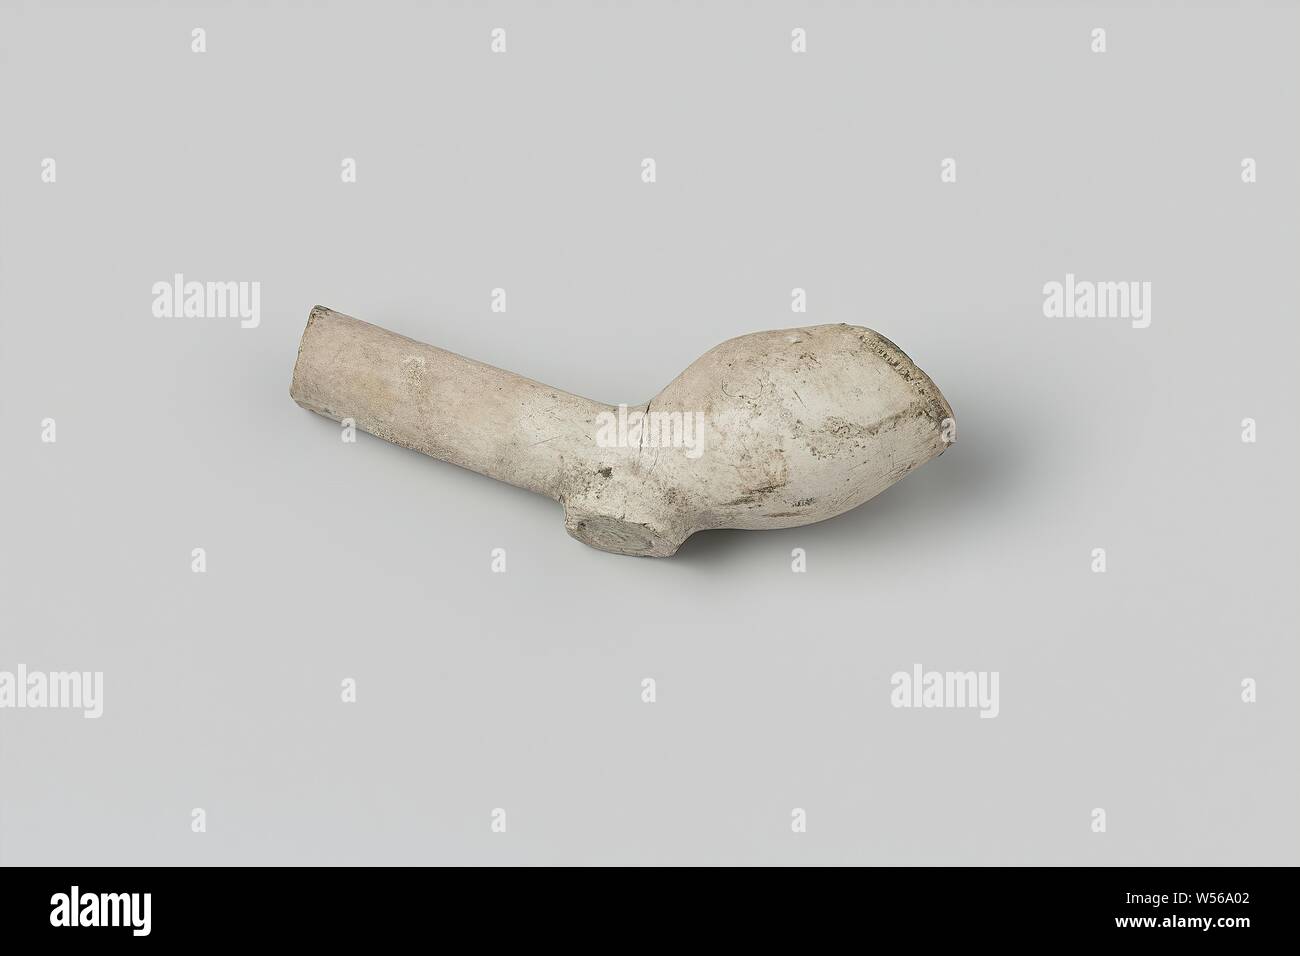 Frammento di una tubazione di tabacco, un frammento di un piccolo bianco tubazione di tabacco. Contrassegnato: WP. Nota: bruciata., anonimo, c. 1600 - c. 1699, il tubo di argilla, l 6,5 cm l 3.8 cm × W 2.1 cm Foto Stock